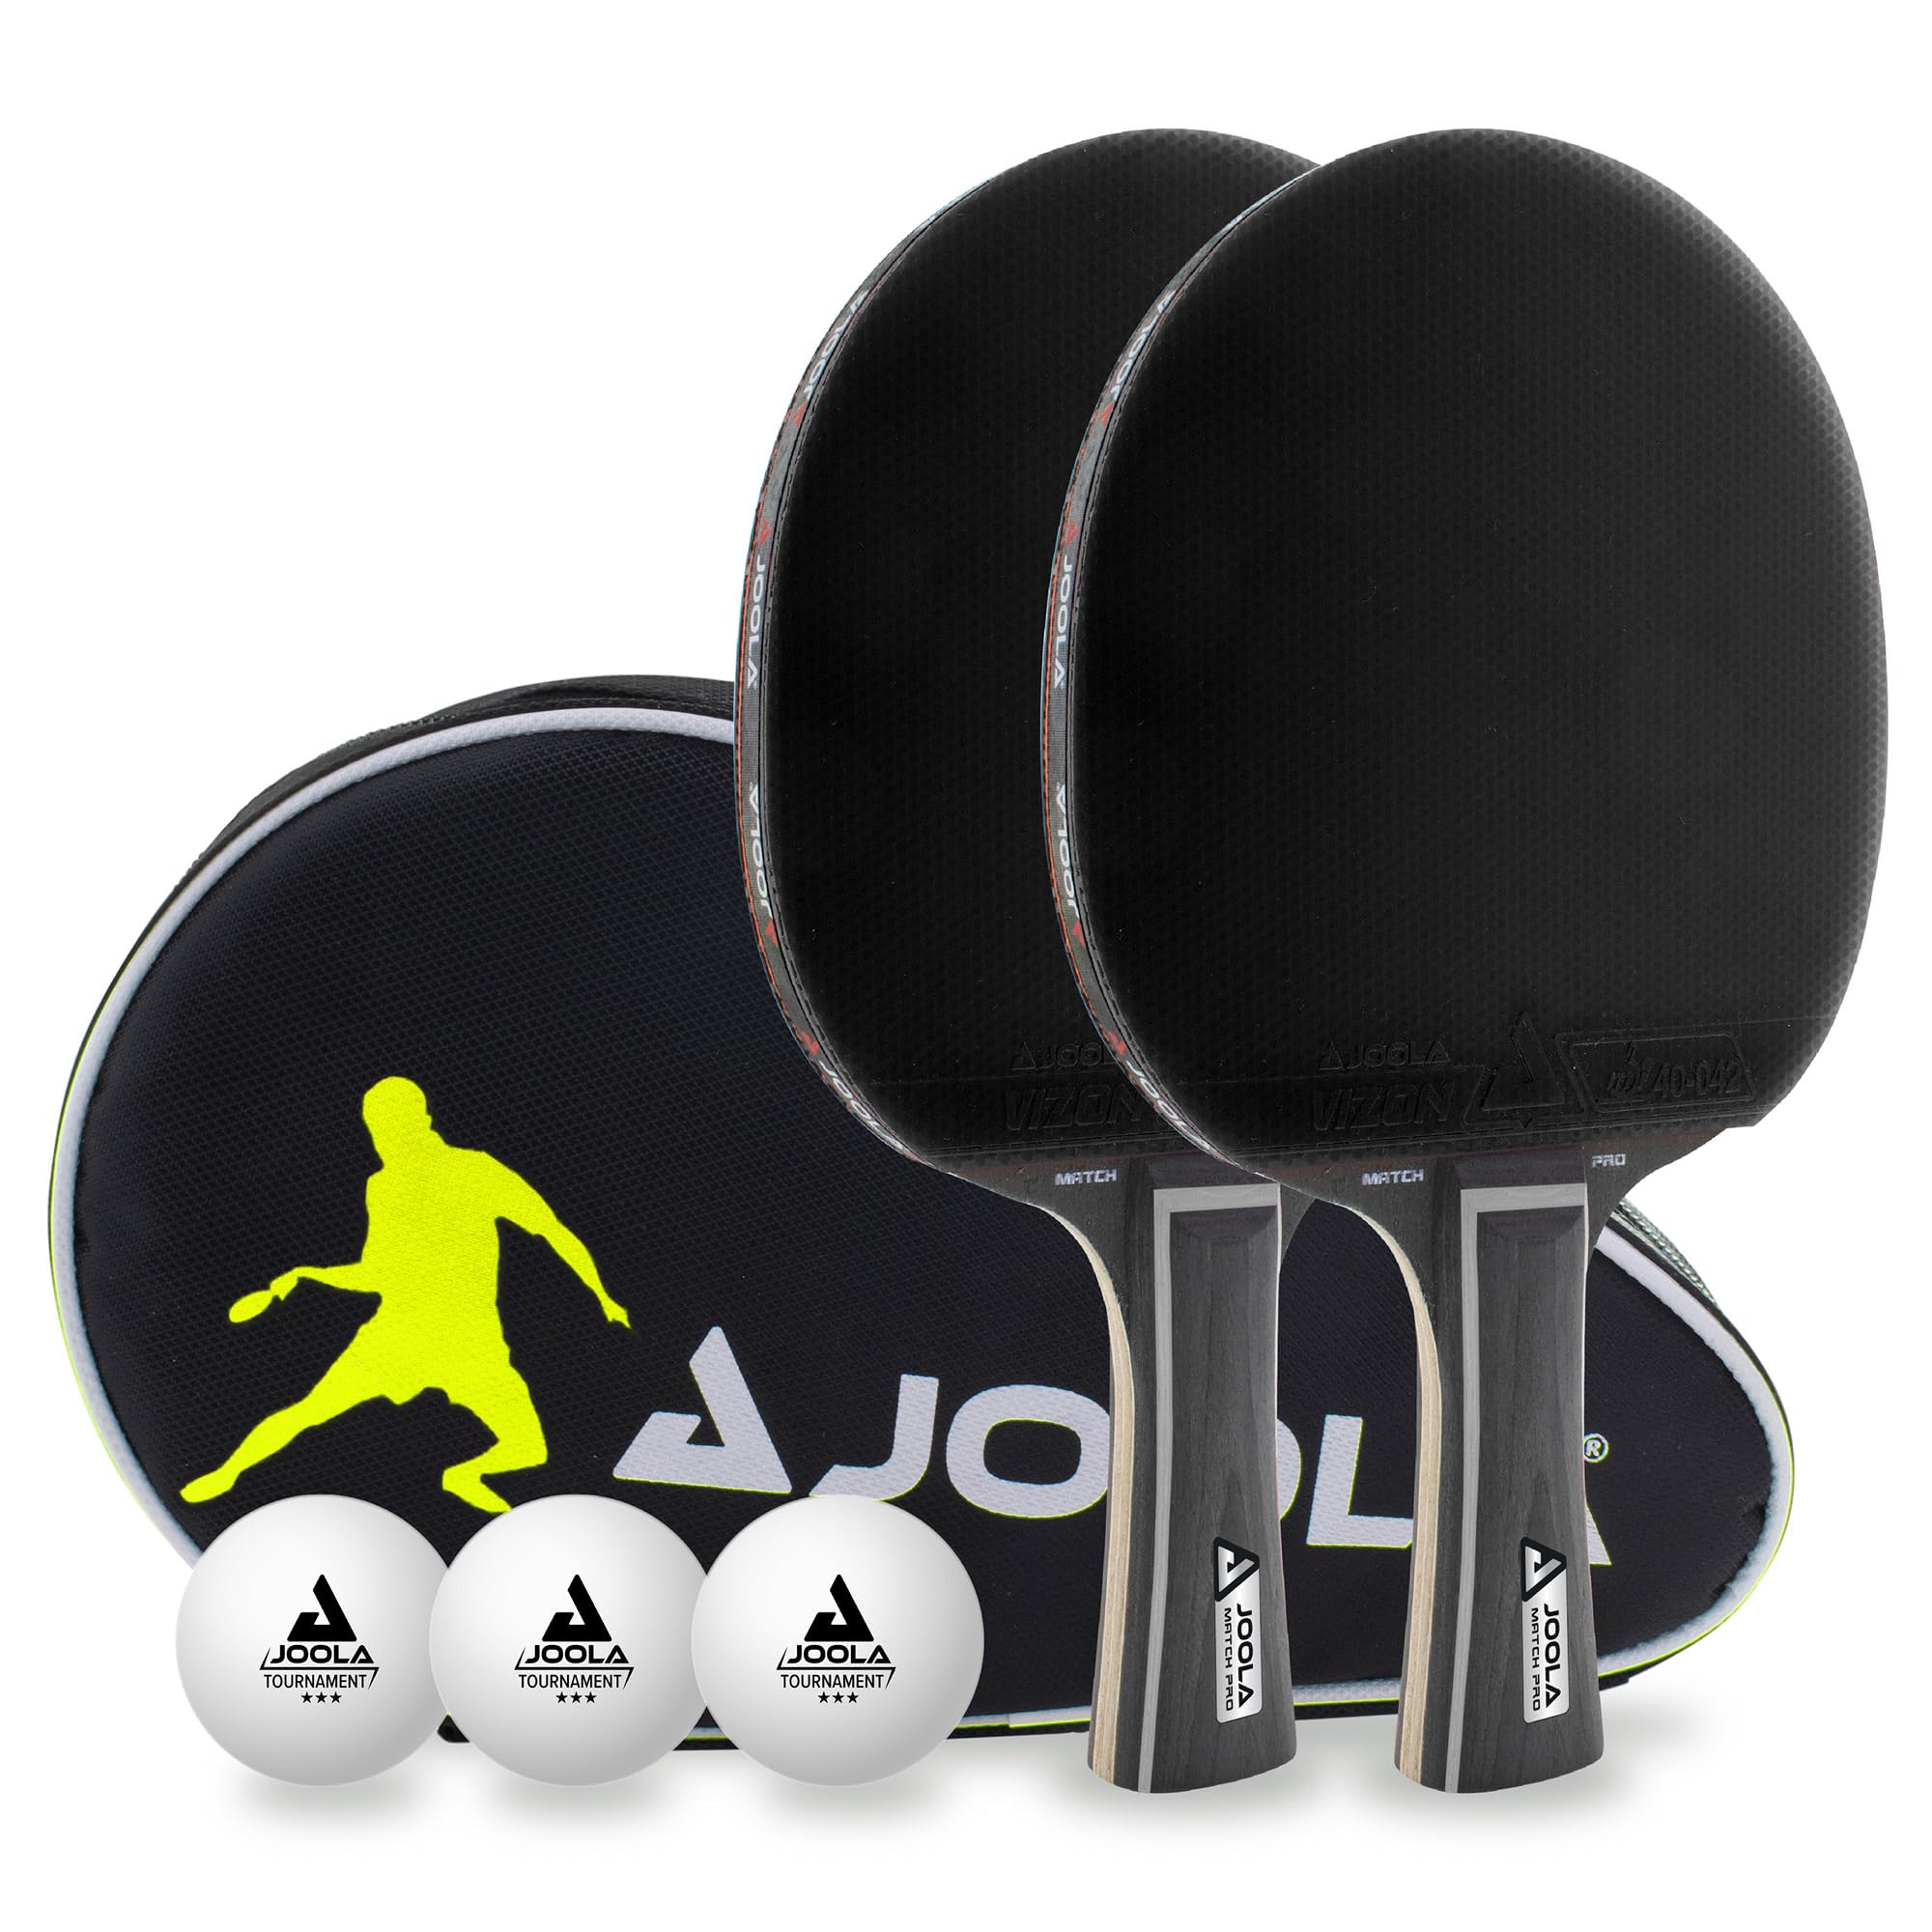 JOOLA Tischtennis Set Black Duo PRO 2 Tischtennisschläger + 3 Tischtennisbälle + Tischtennishülle, schwarz, 6-teilig